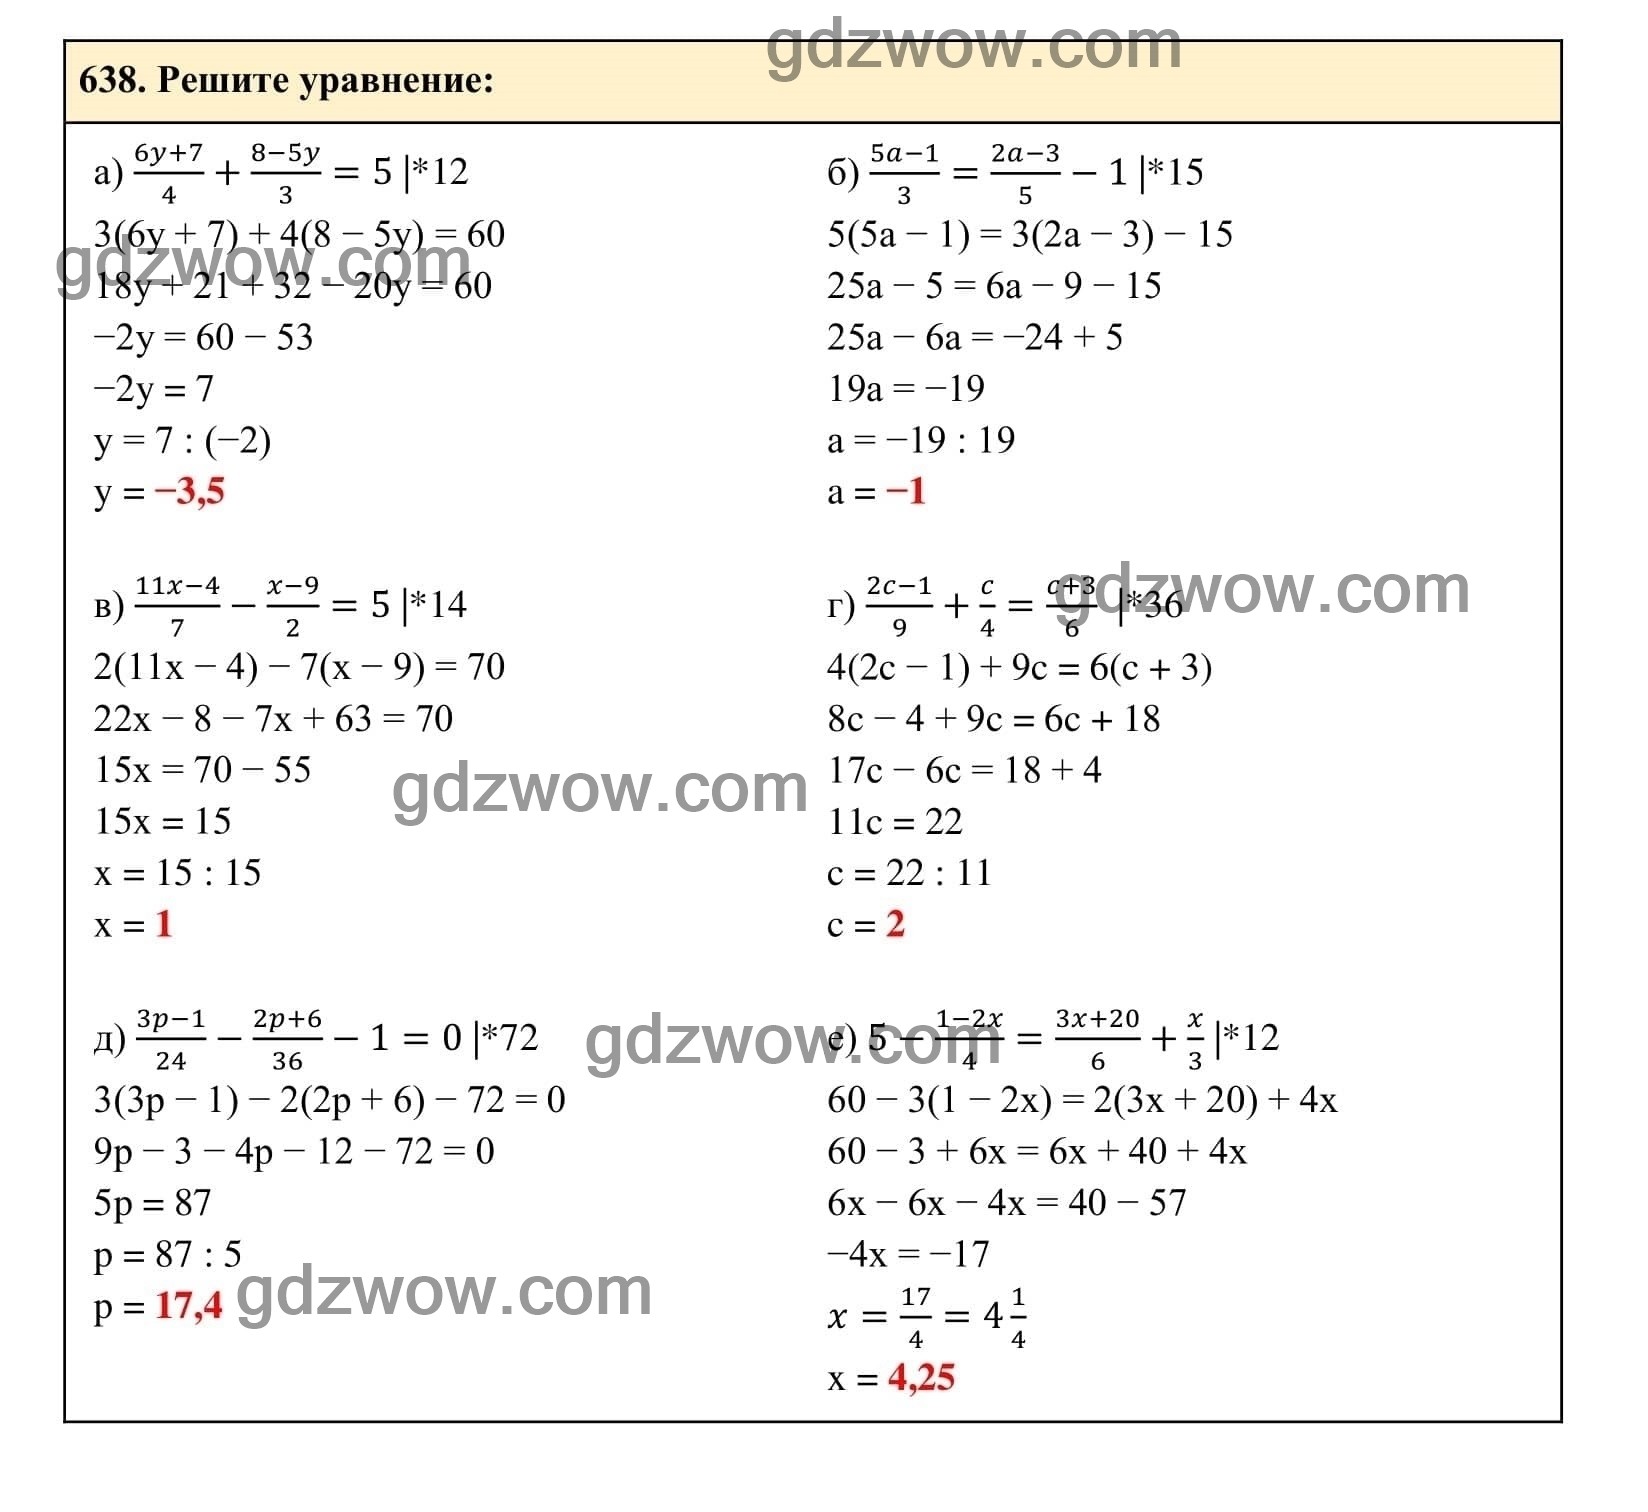 Упражнение 638 - ГДЗ по Алгебре 7 класс Учебник Макарычев (решебник) - GDZwow